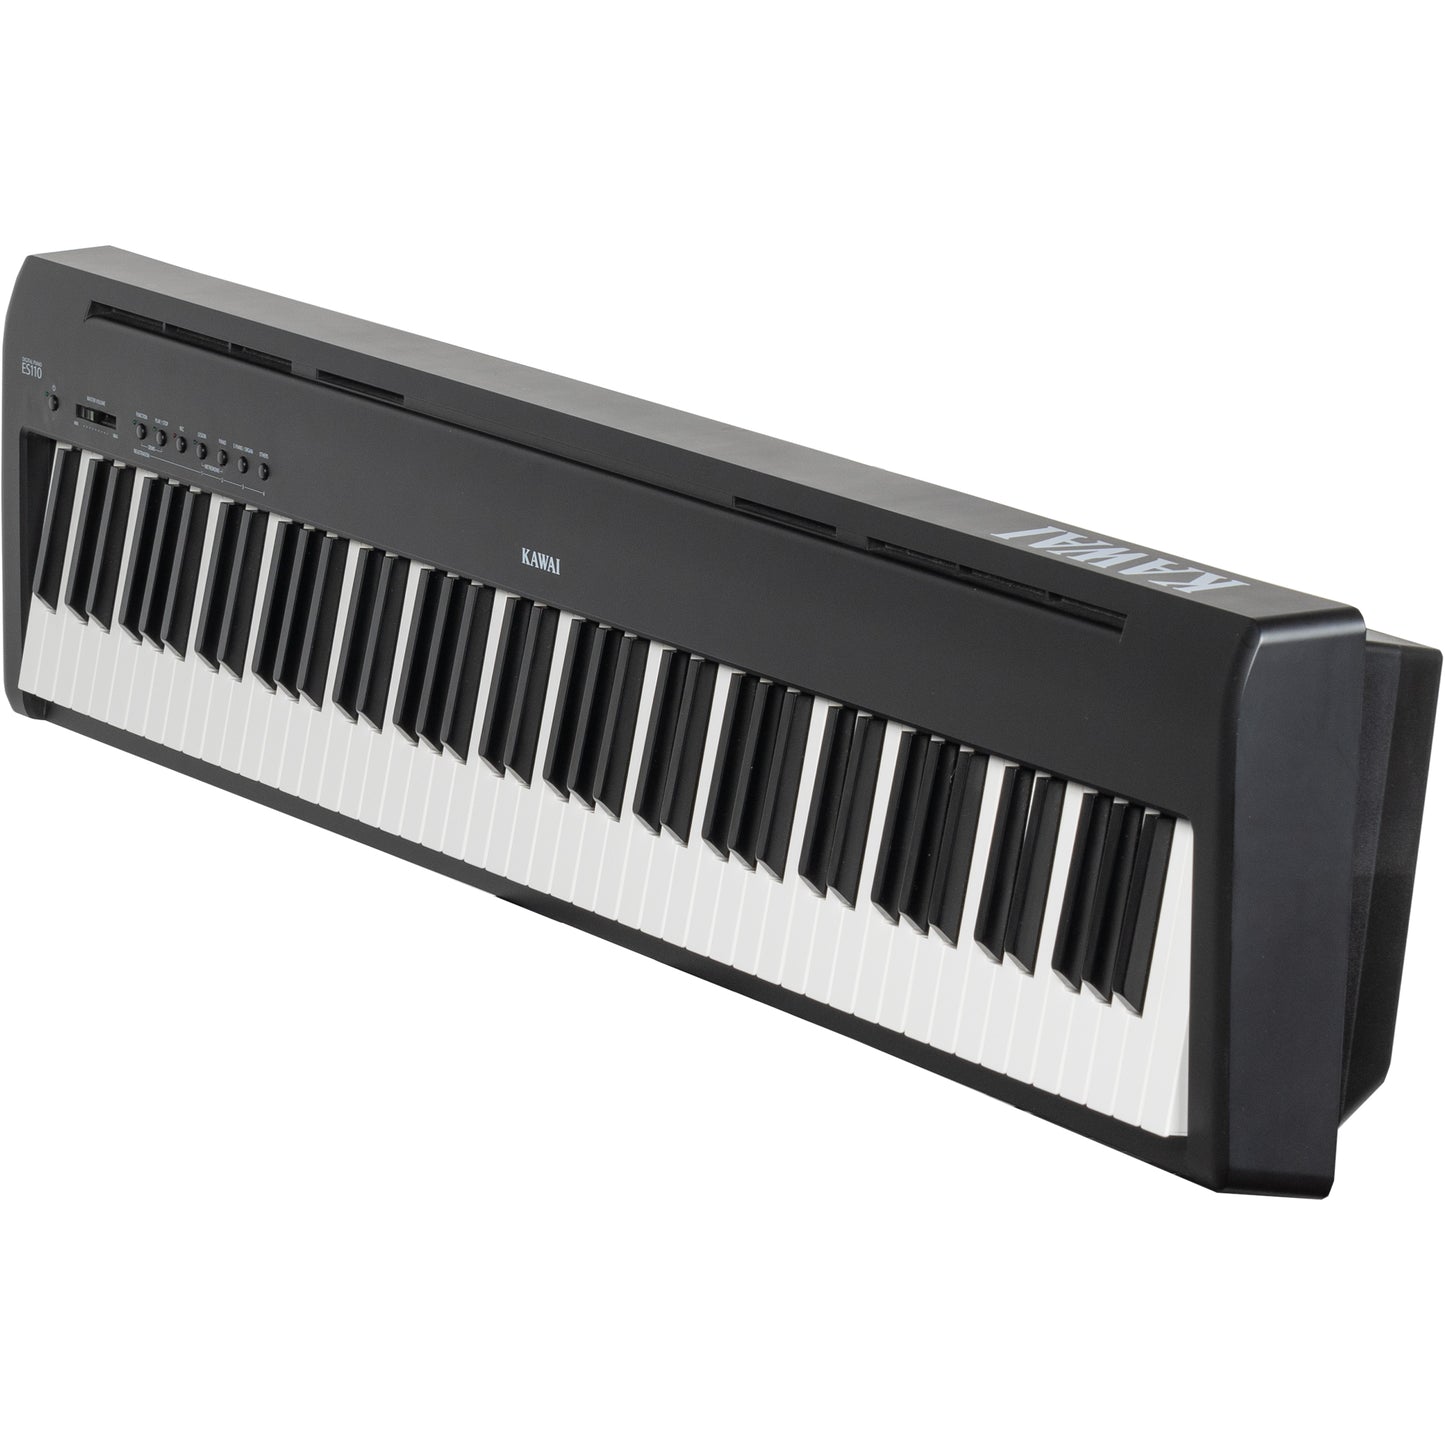 Kawai ES110 Portable Digital Piano